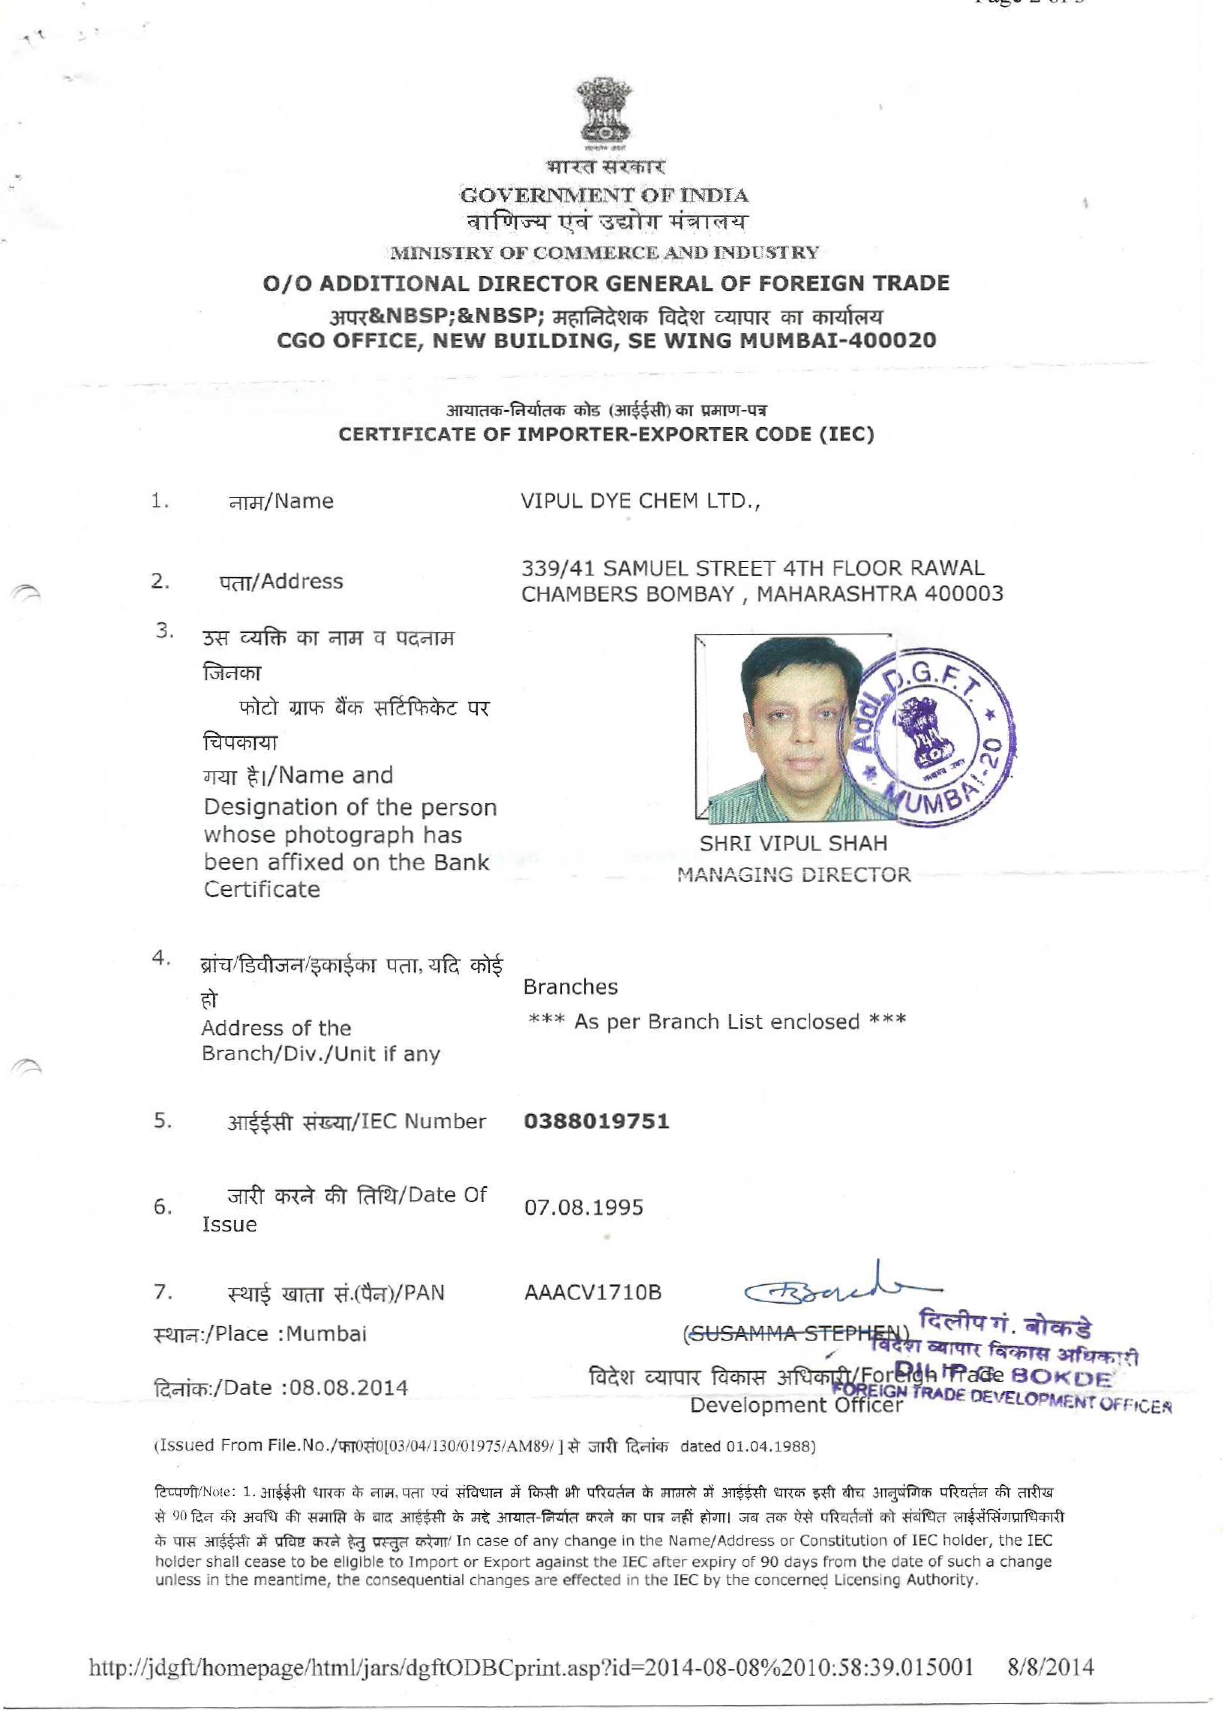 Certificate of Importer Exporter Code